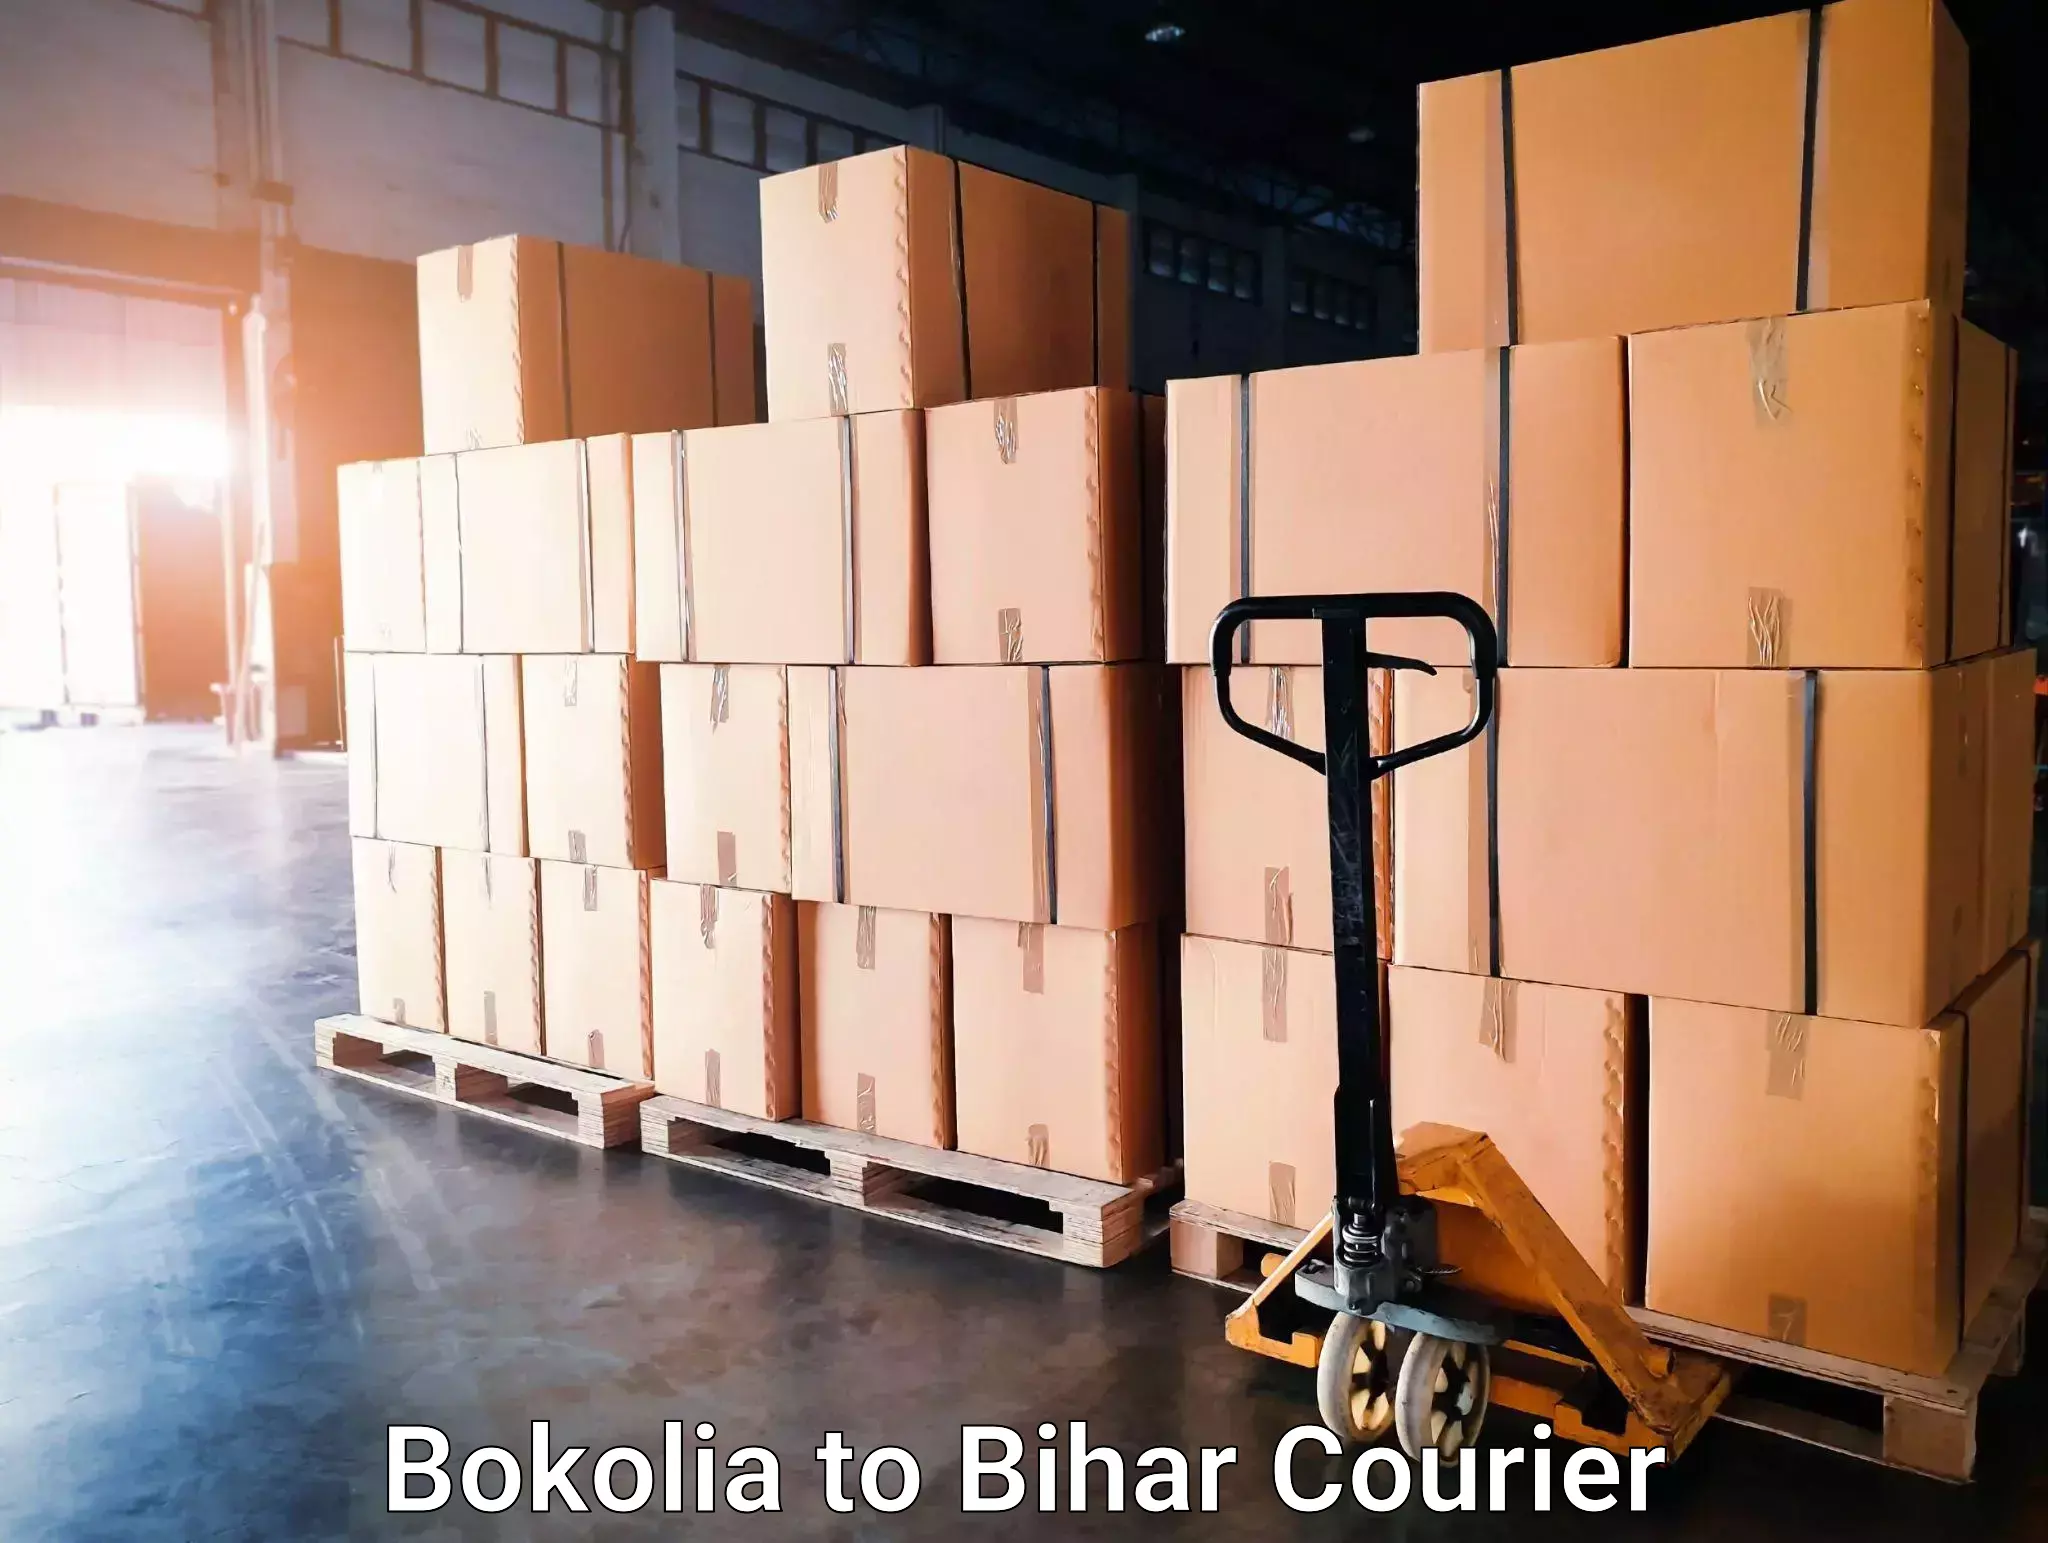 Courier service comparison Bokolia to Sherghati